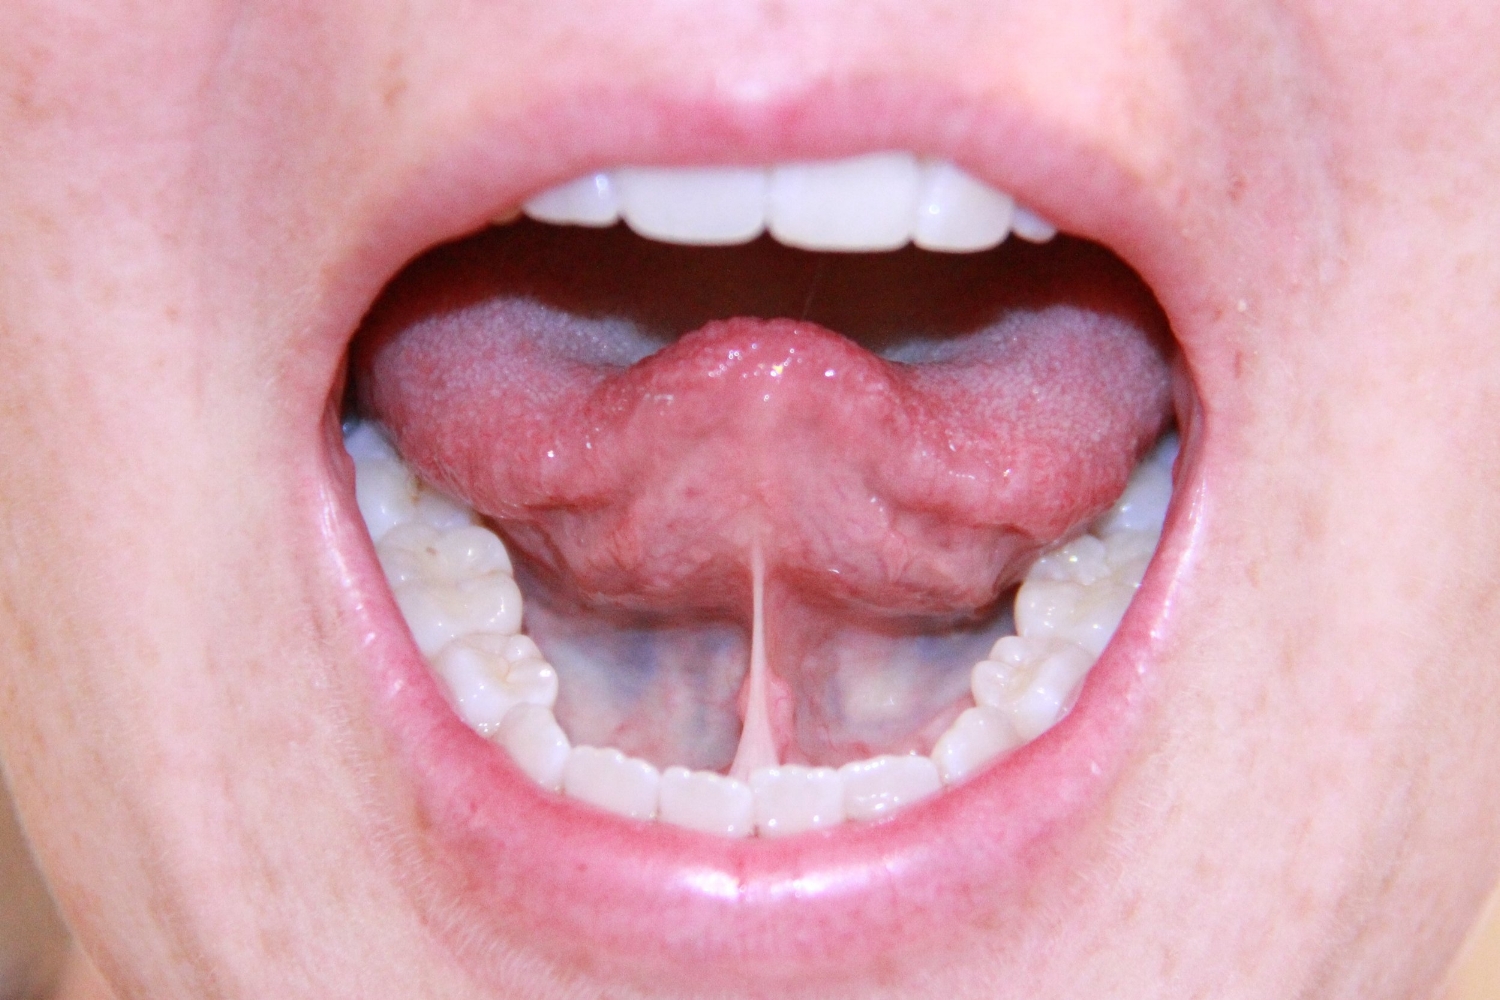 Tongue Tied!